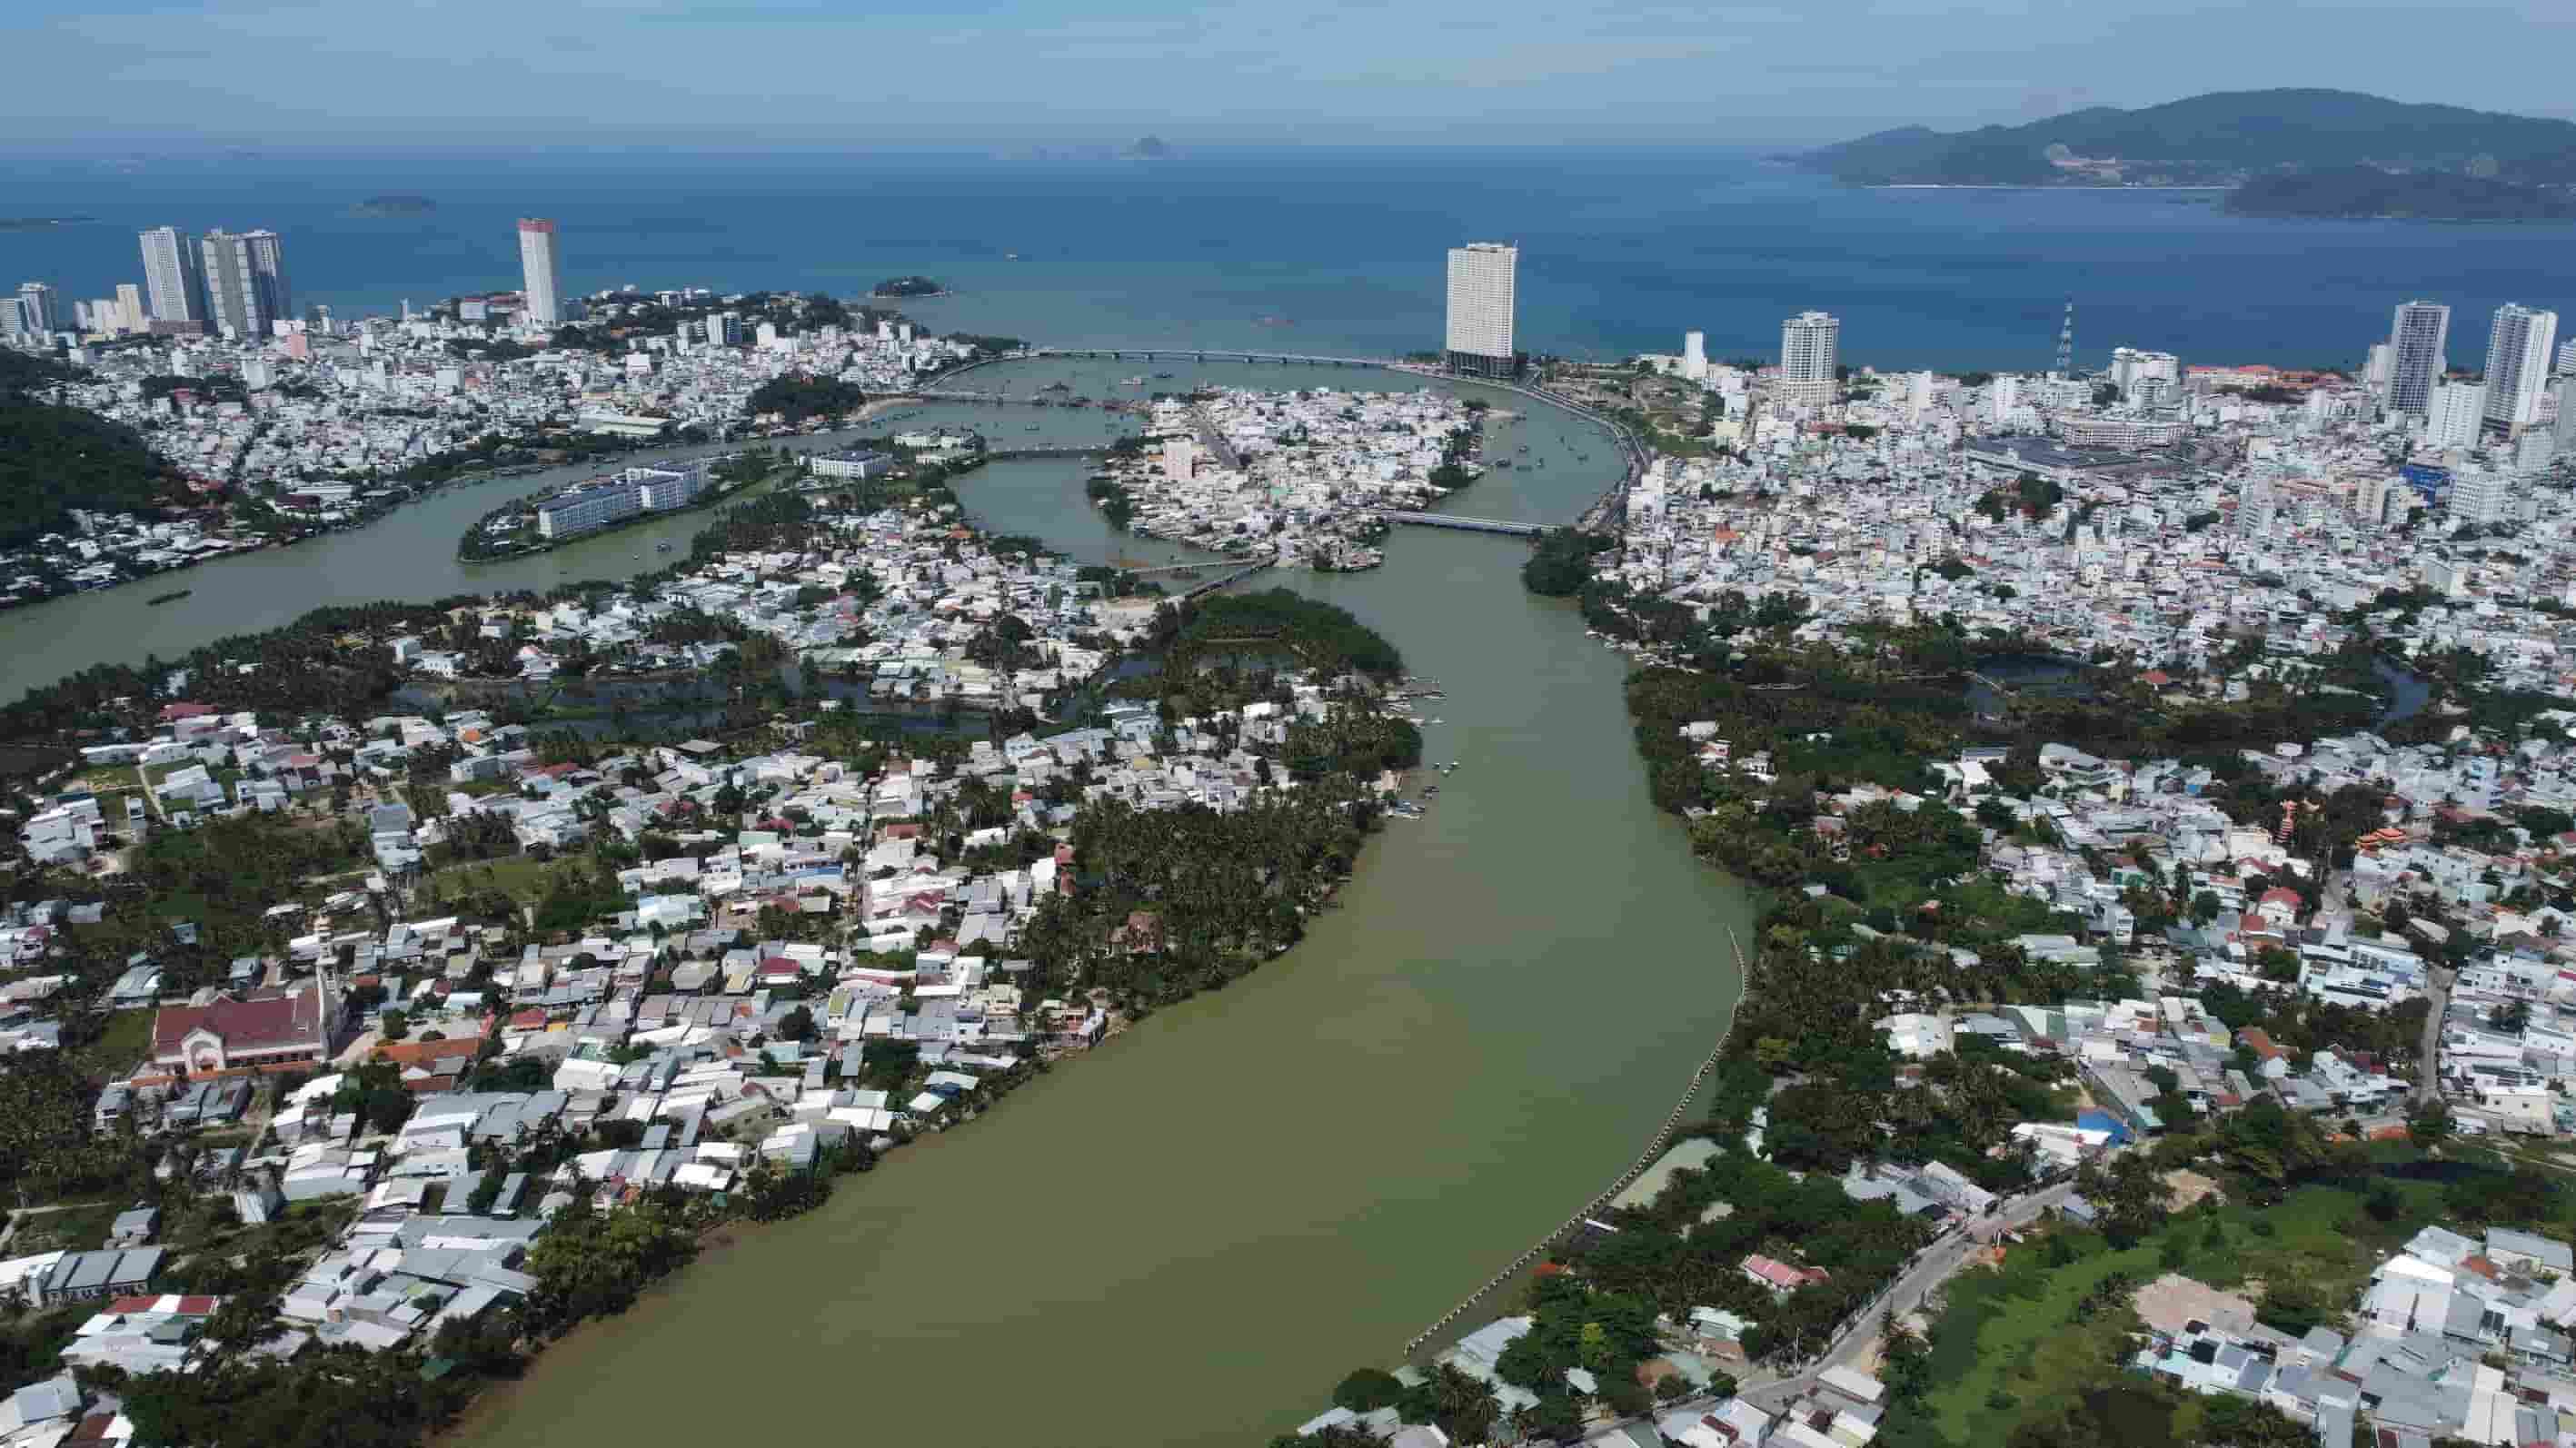 Dự án Đập ngăn mặn Nha Trang được kỳ vọng giúp ngăn chặn tình trạng nhiễm mặn sông Cái Nha Trang vào mùa khô, đảm bảo thoát lũ vào mùa mưa và nguồn nước sinh hoạt cho khoảng 500.000 người dân TP Nha Trang, một phần huyện Diên Khánh.